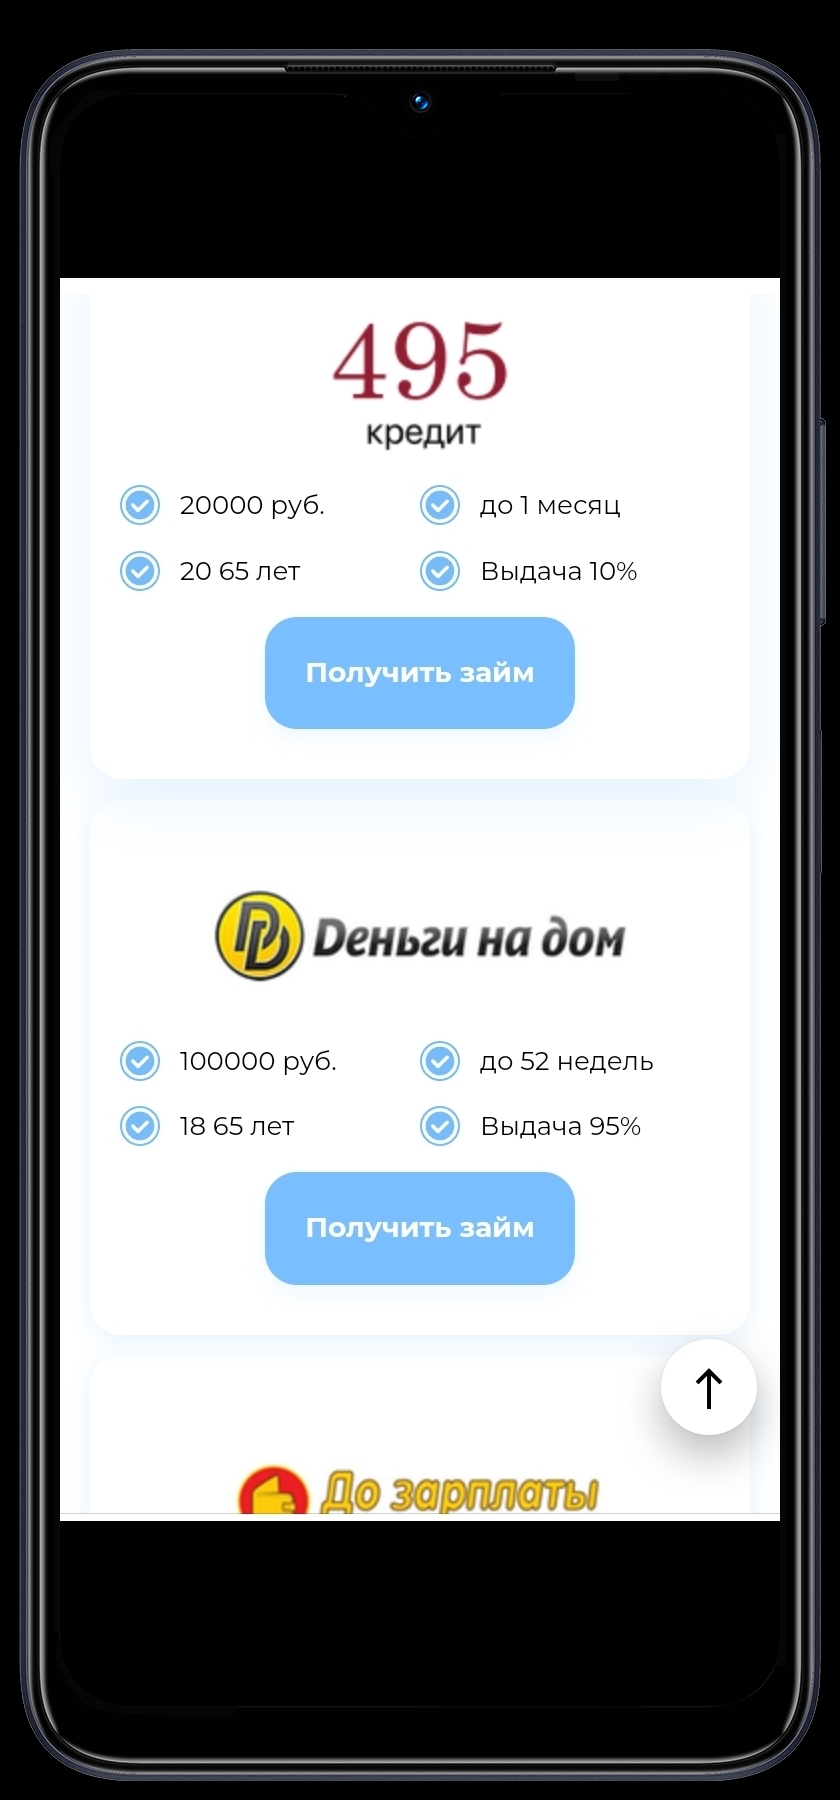 Займ бот скачать бесплатно Финансы на Android из каталога RuStore от Майков  Олег Вячеславович